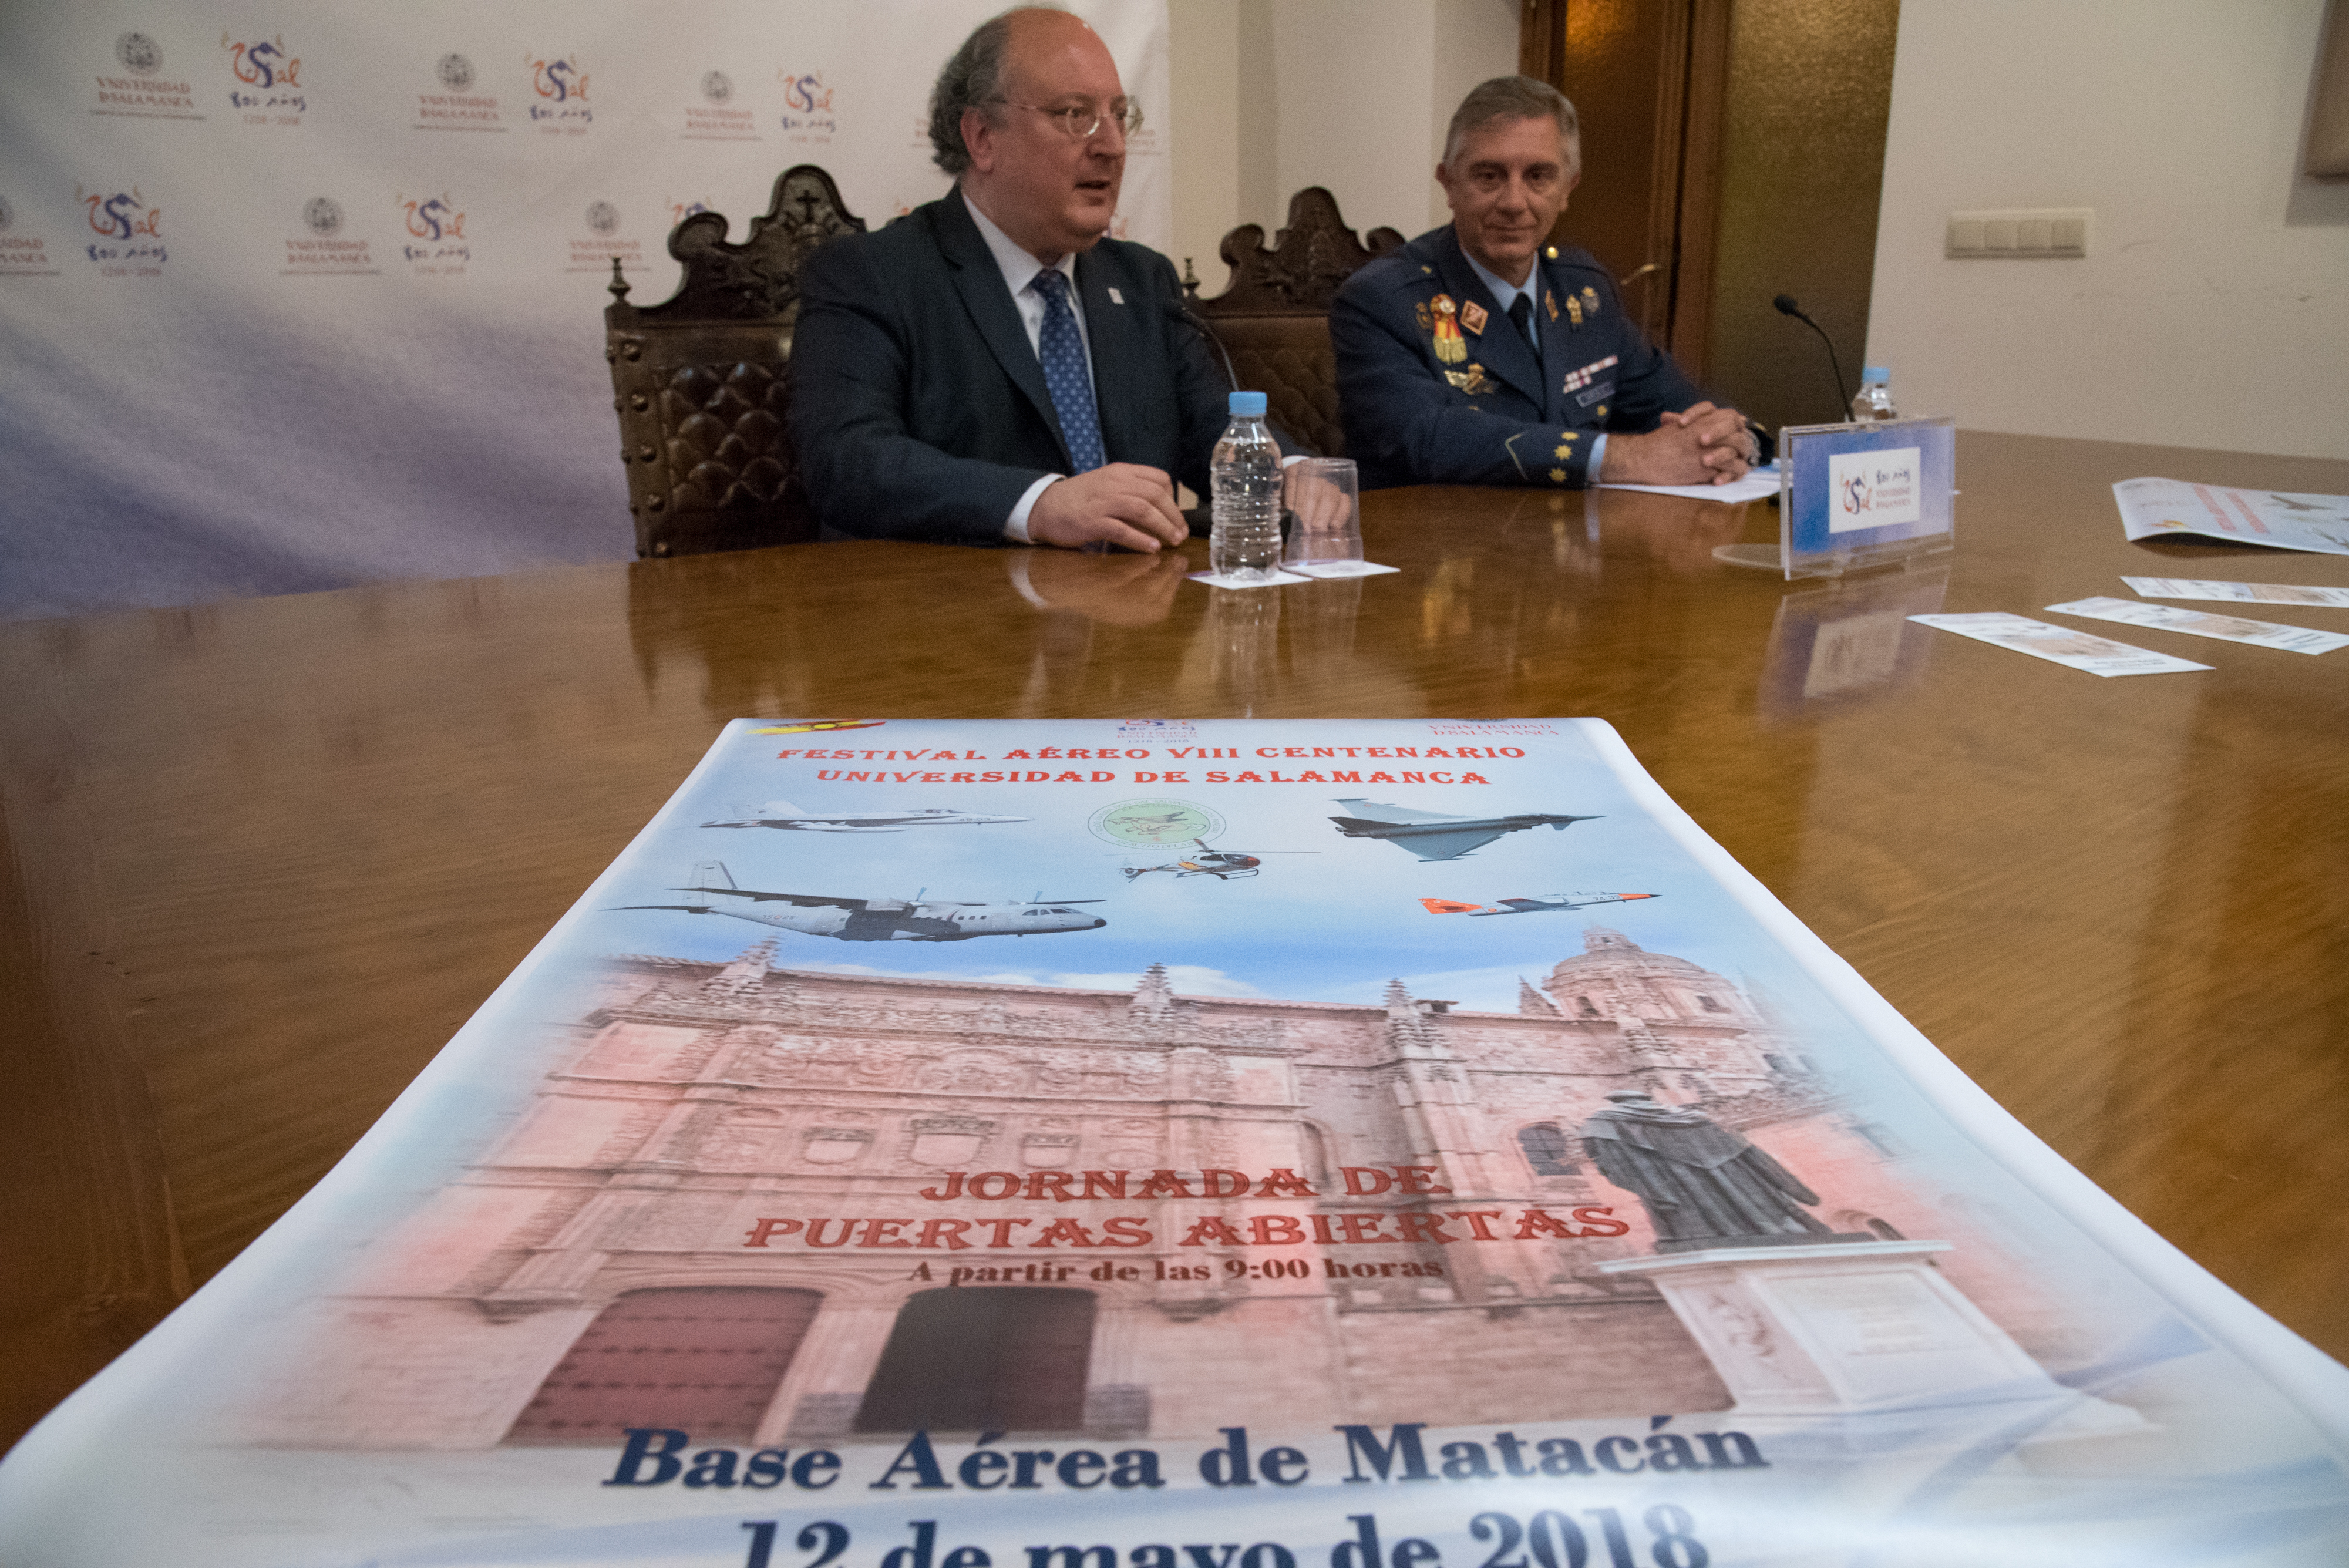 La Base Aérea de Matacán acogerá una exhibición aérea como homenaje a los ocho siglos de historia de la Universidad de Salamanca